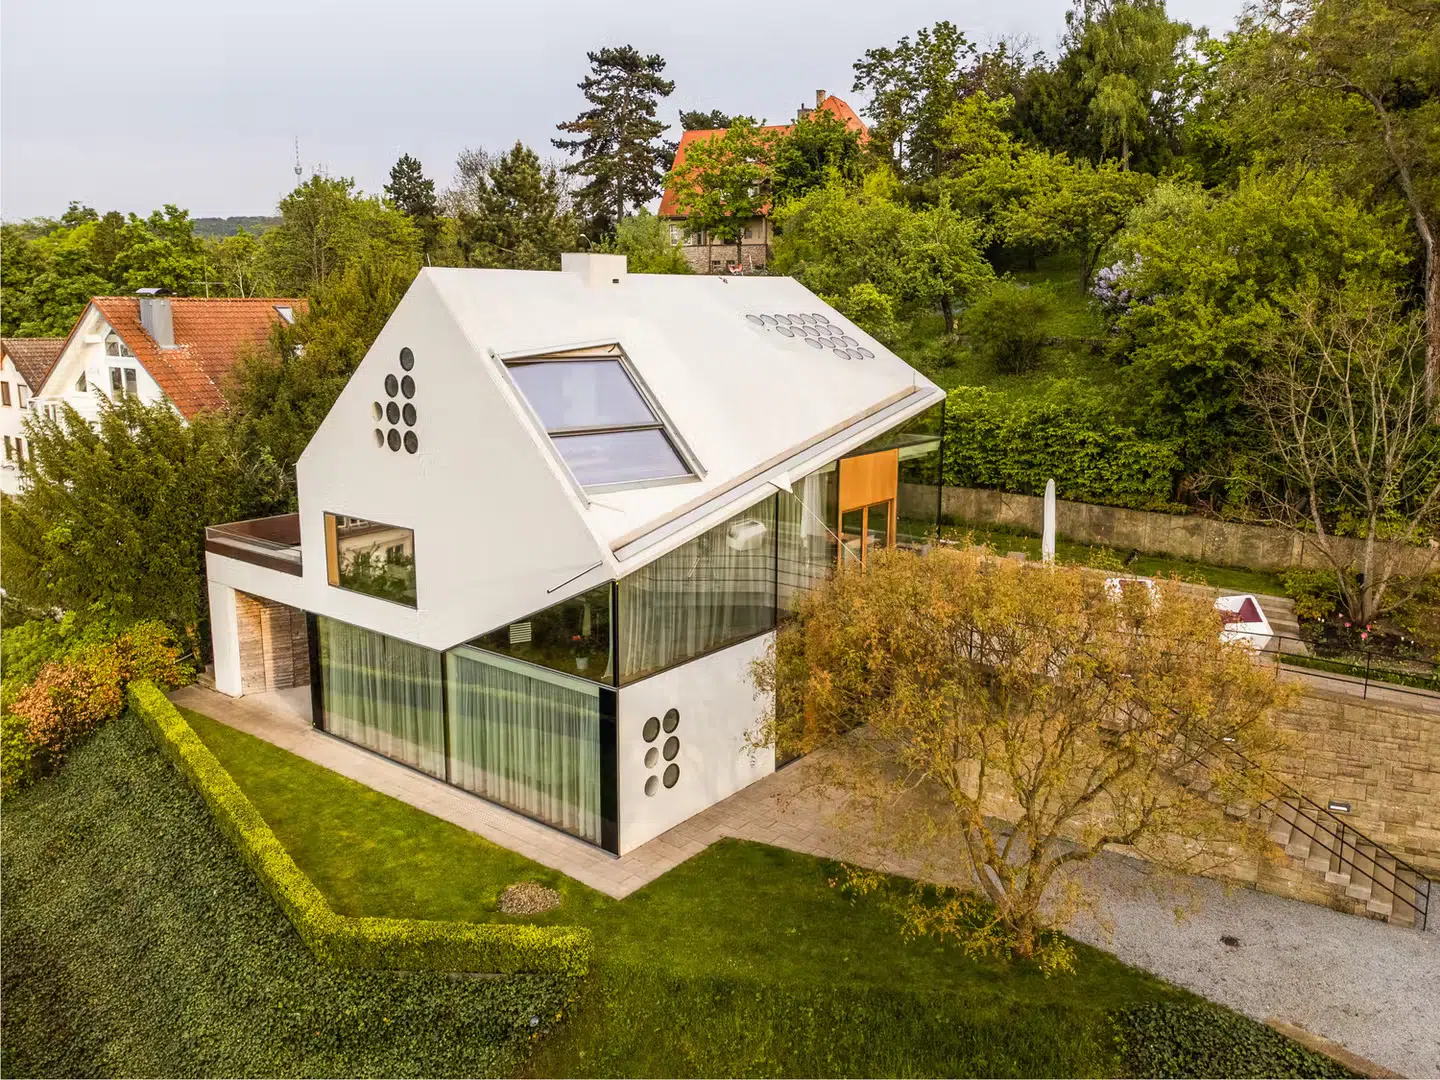 Dom z betonu i szkła za 7 milionów dolarów by Sotheby's International Realty in Stuttgart